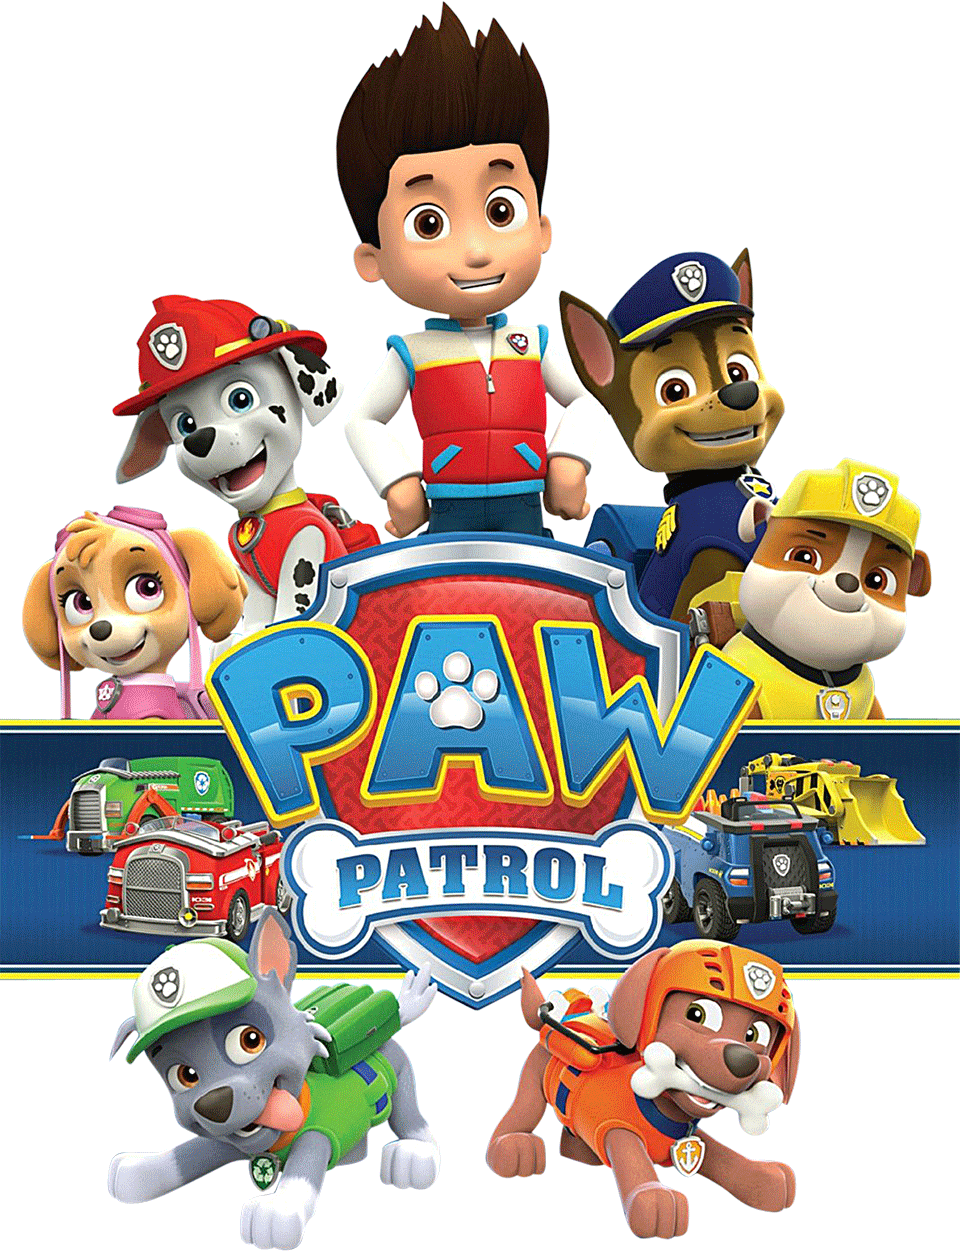 Biệt đội Paw Patrol là một bộ phim hoạt hình rất thú vị dành cho trẻ em. Những chú chó trong phim có những khả năng đặc biệt, luôn sẵn sàng cứu giúp mọi người. Xem hình ảnh để ghi nhớ những khoảnh khắc tuyệt vời cùng Biệt đội Paw Patrol.